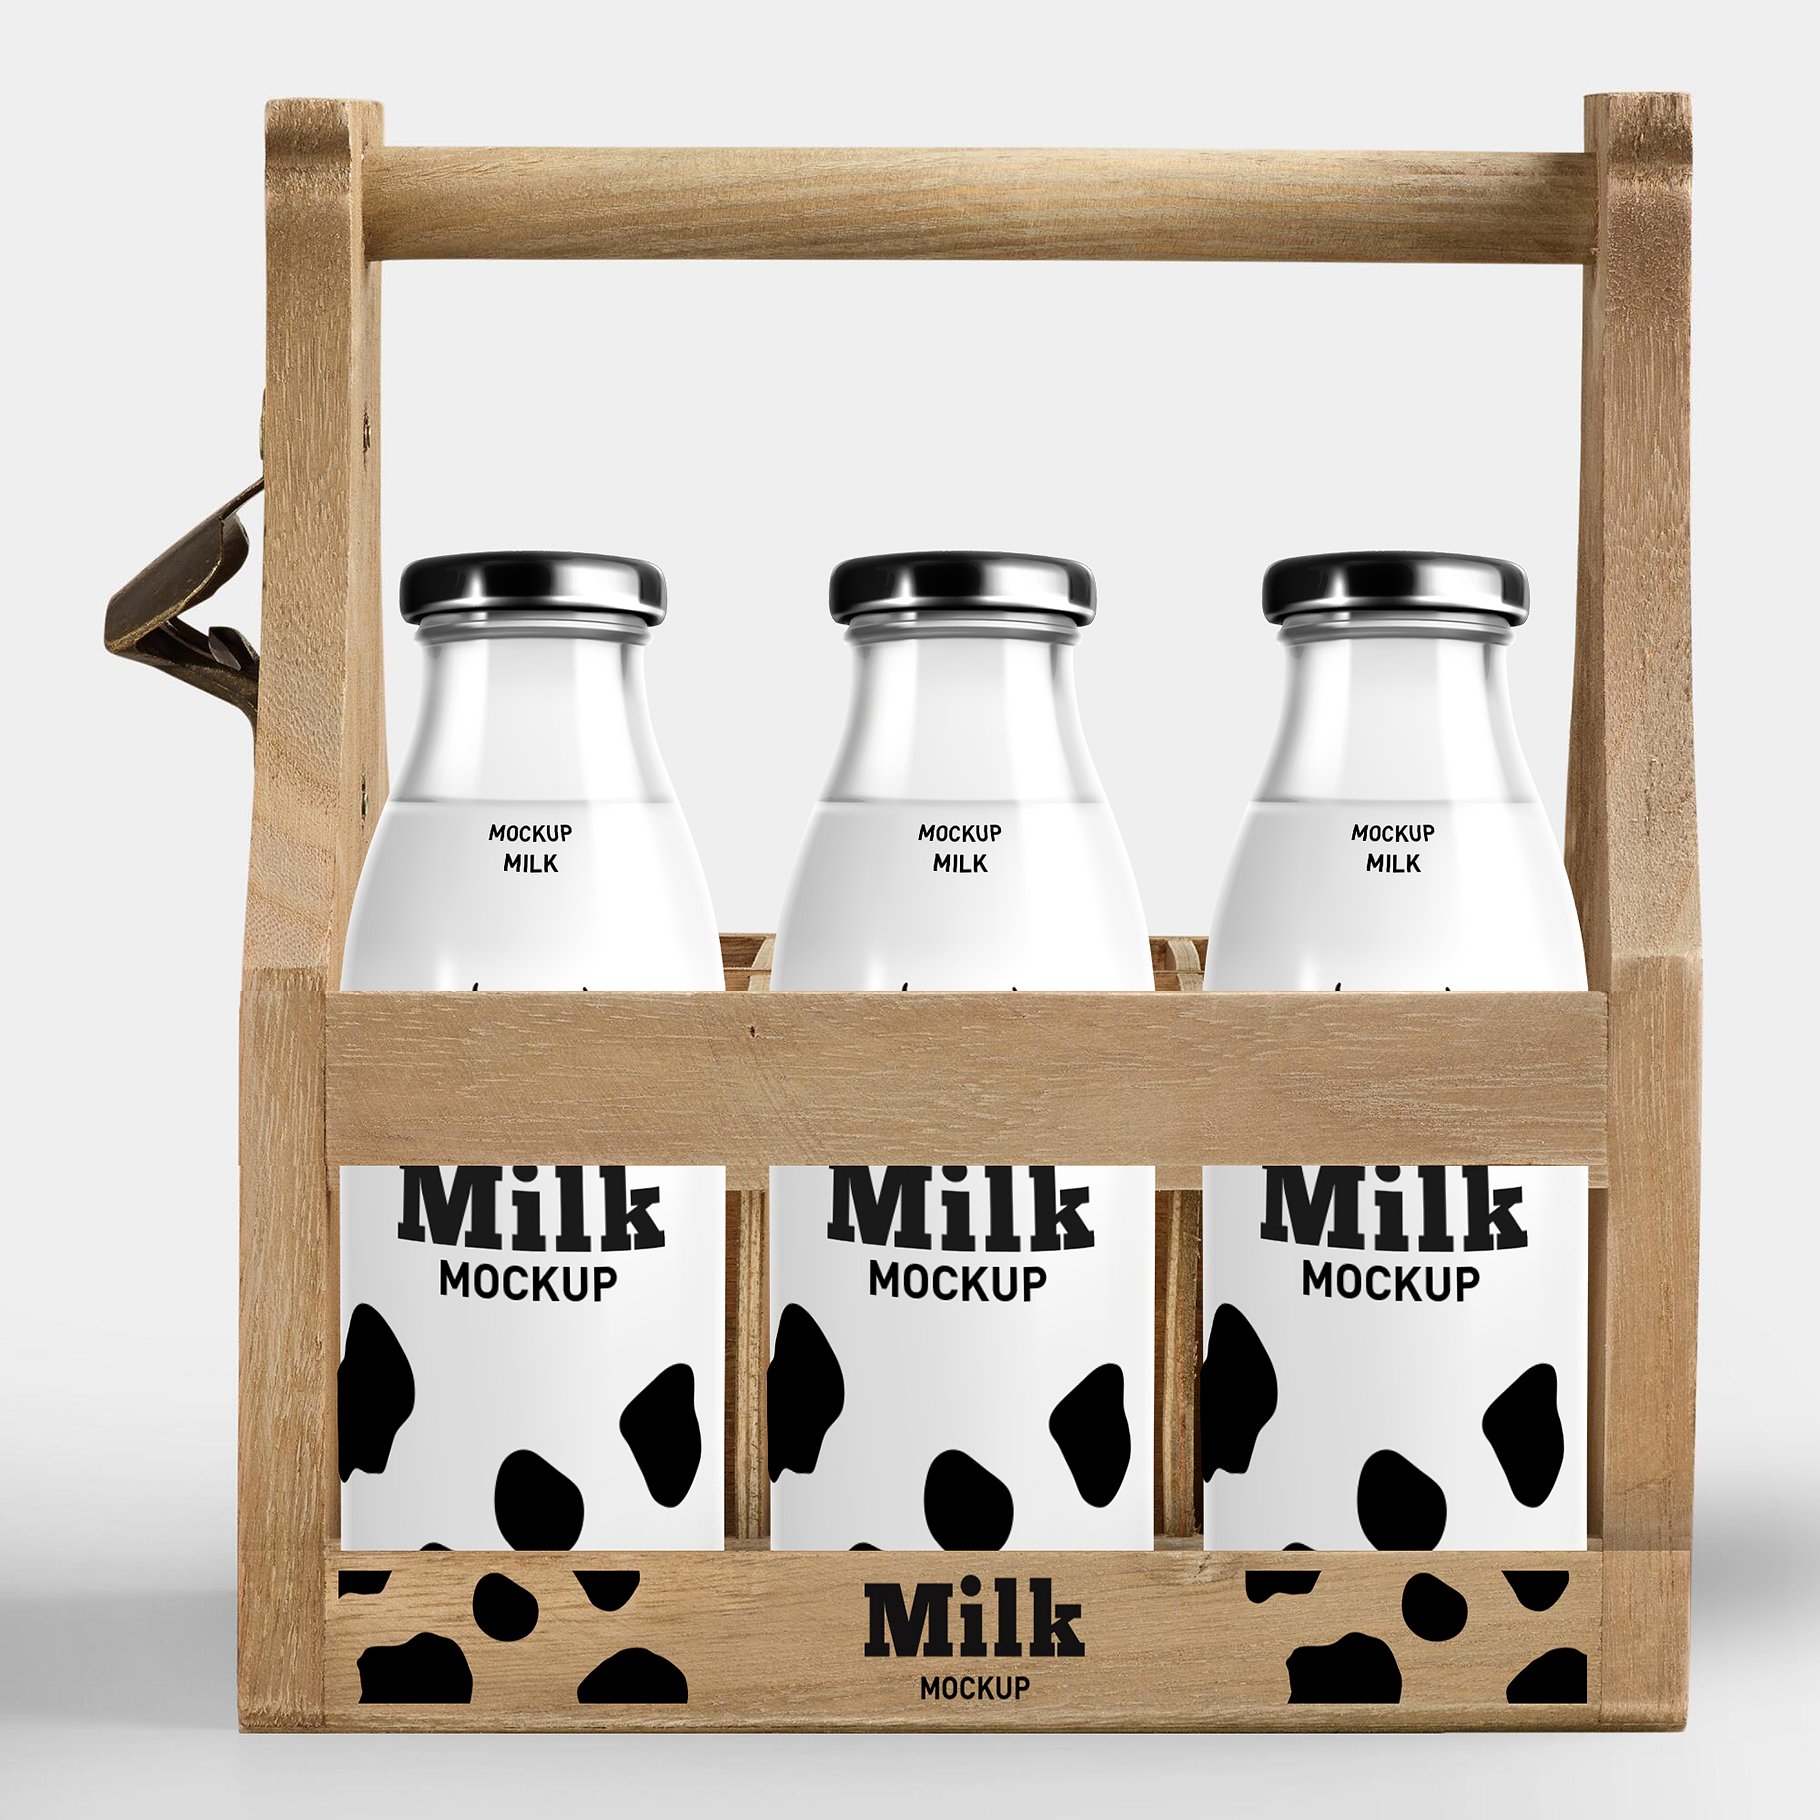 牛奶酸奶瓶包装样机展示模型mockups插图(8)